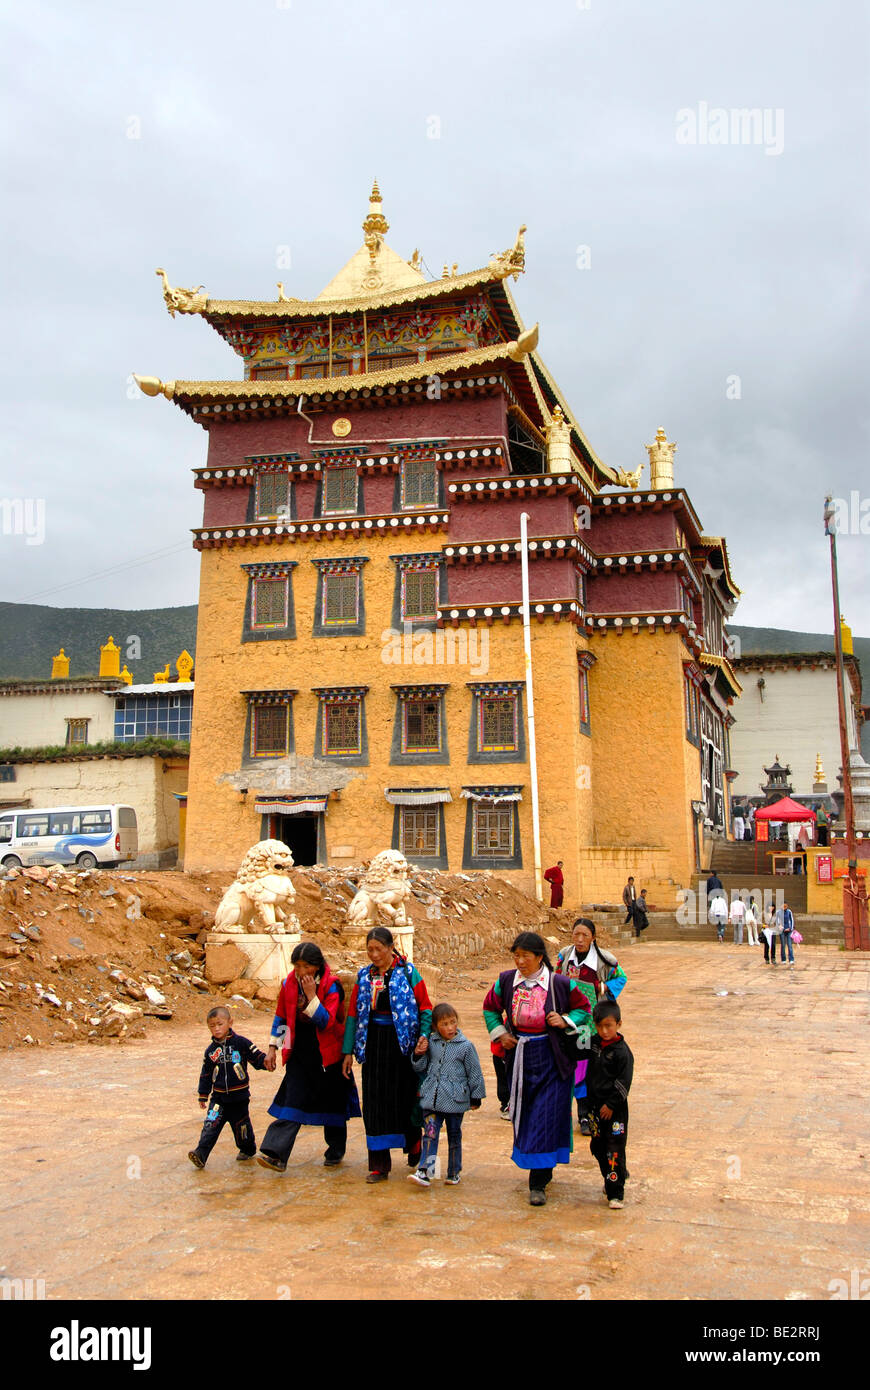 El budismo tibetano, los tibetanos en frente del templo, el monasterio de Ganden Sumtseling Gompa, Zhongdian, Shangri-La, provincia de Yunnan, Peopl Foto de stock